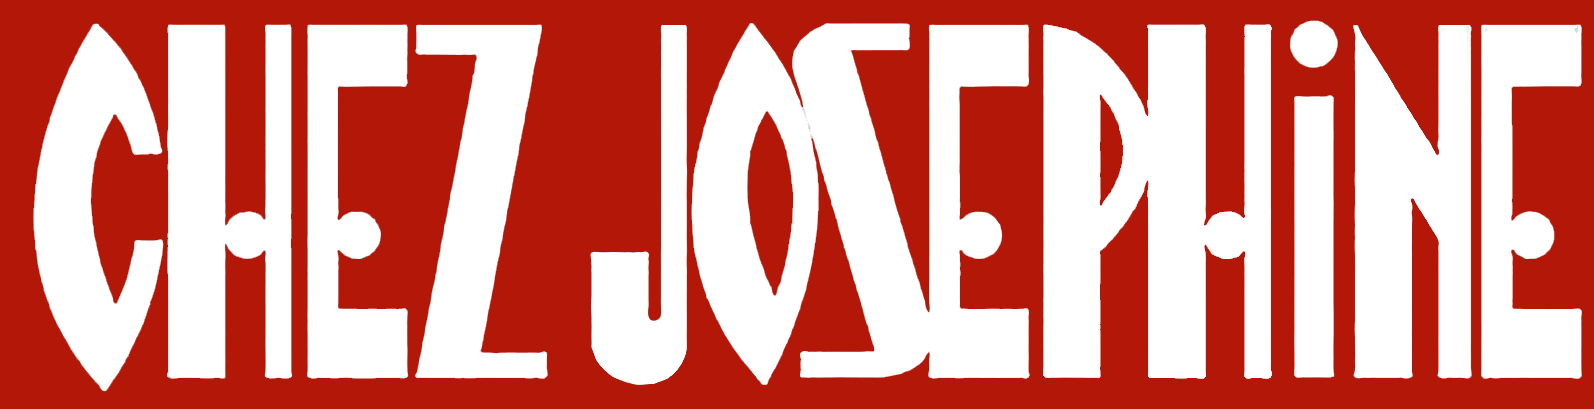  Chez Josephine logo 